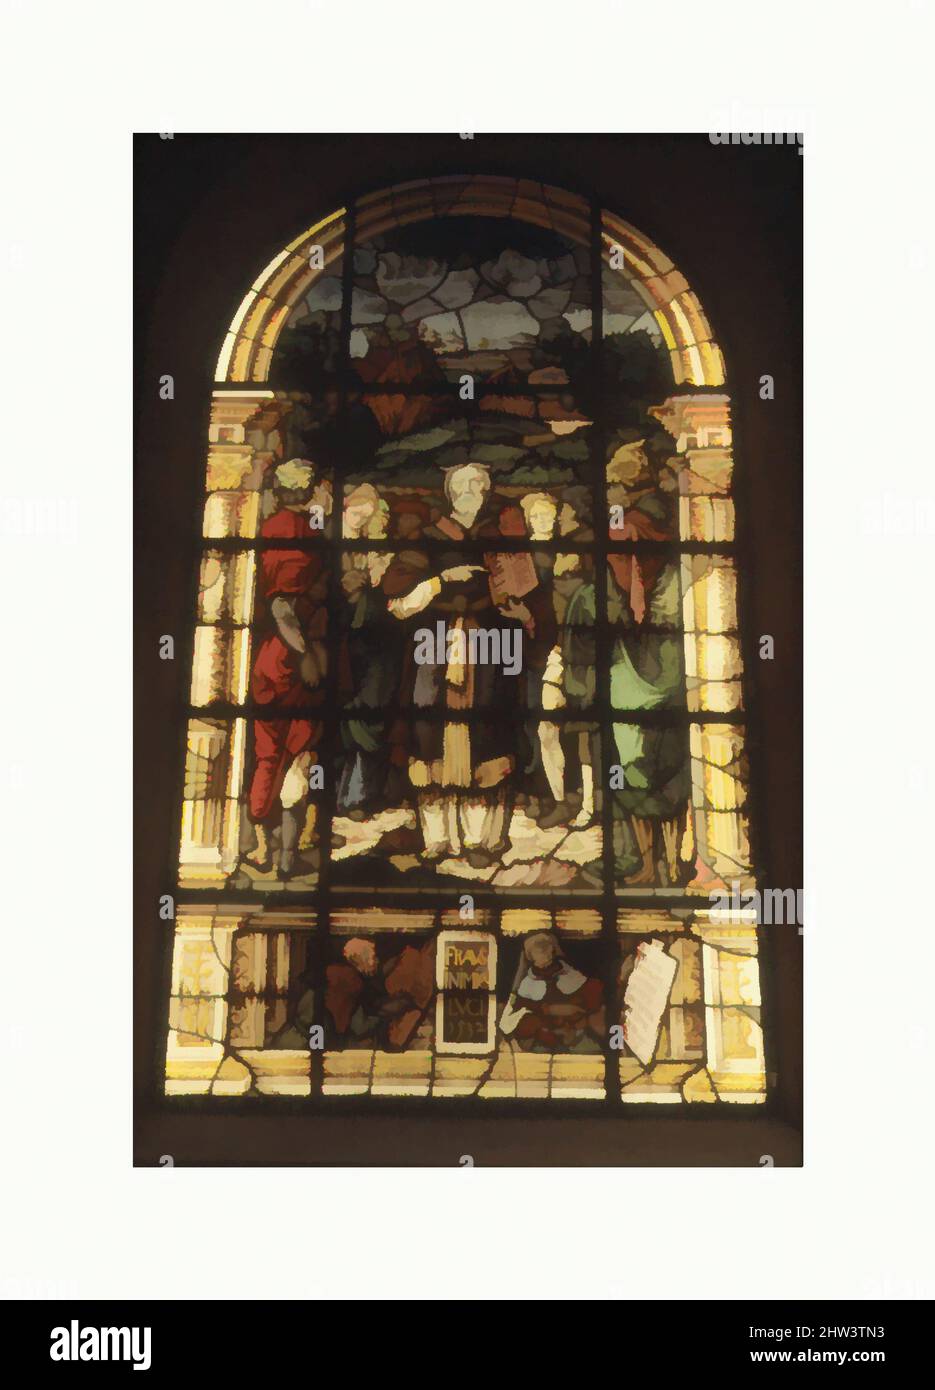 Arte ispirata da Mosè che presenta le tavole di legge, 1532, francese, Lorena, Metz, Vetro colorato, H. 9' 11 3/8 x W. 66 1/4 poll. (303,2 x 168,3 cm.) solo a-o, vetrata, Valentin Bousch (francese, attivo 1514–41, deceduto 1541), Questa finestra proviene da una serie di sette finestre realizzate per il, opere classiche modernizzate da Artotop con un tuffo di modernità. Forme, colore e valore, impatto visivo accattivante sulle emozioni artistiche attraverso la libertà delle opere d'arte in modo contemporaneo. Un messaggio senza tempo che persegue una nuova direzione selvaggiamente creativa. Artisti che si rivolgono al supporto digitale e creano l'NFT Artotop Foto Stock